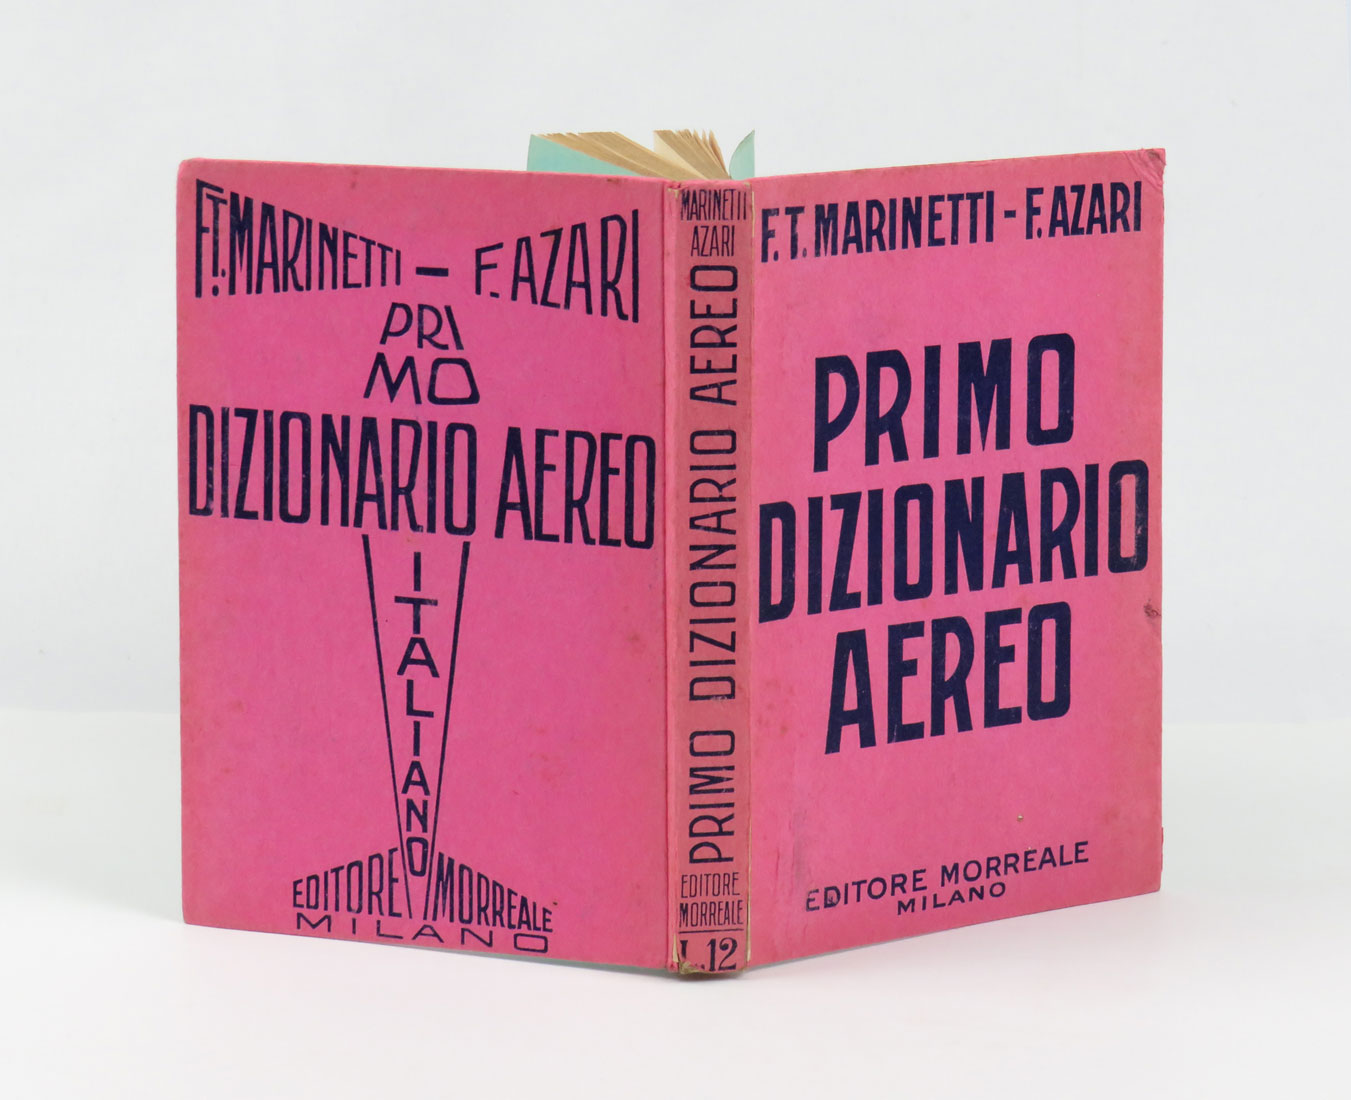 primo dizionario aereo italiano